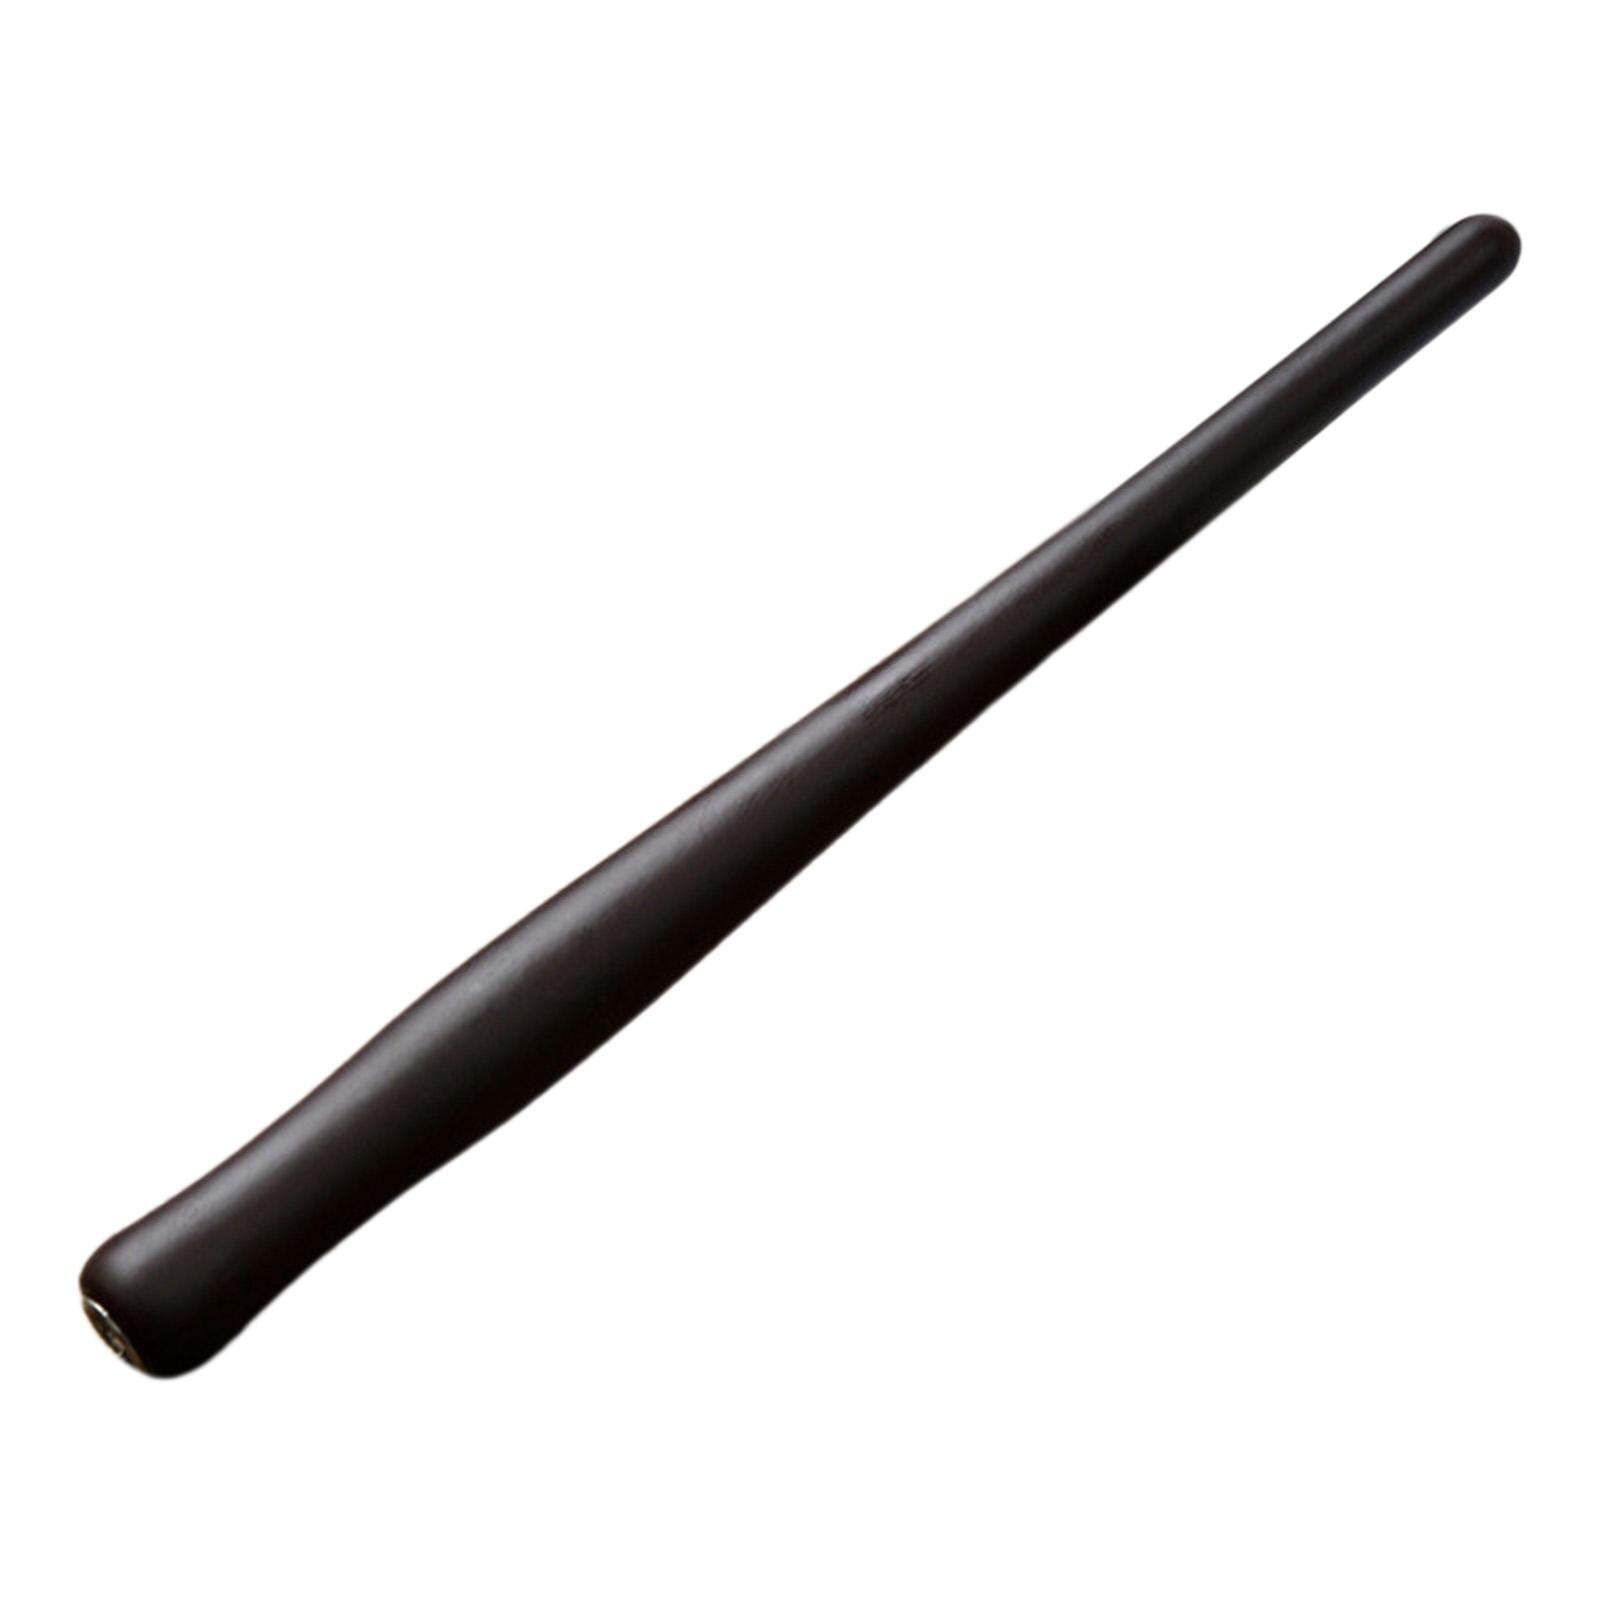 Wooden Calligraphy Dip Pen Holder for Various Pen Nib Portable Compact Retro Dark Brown